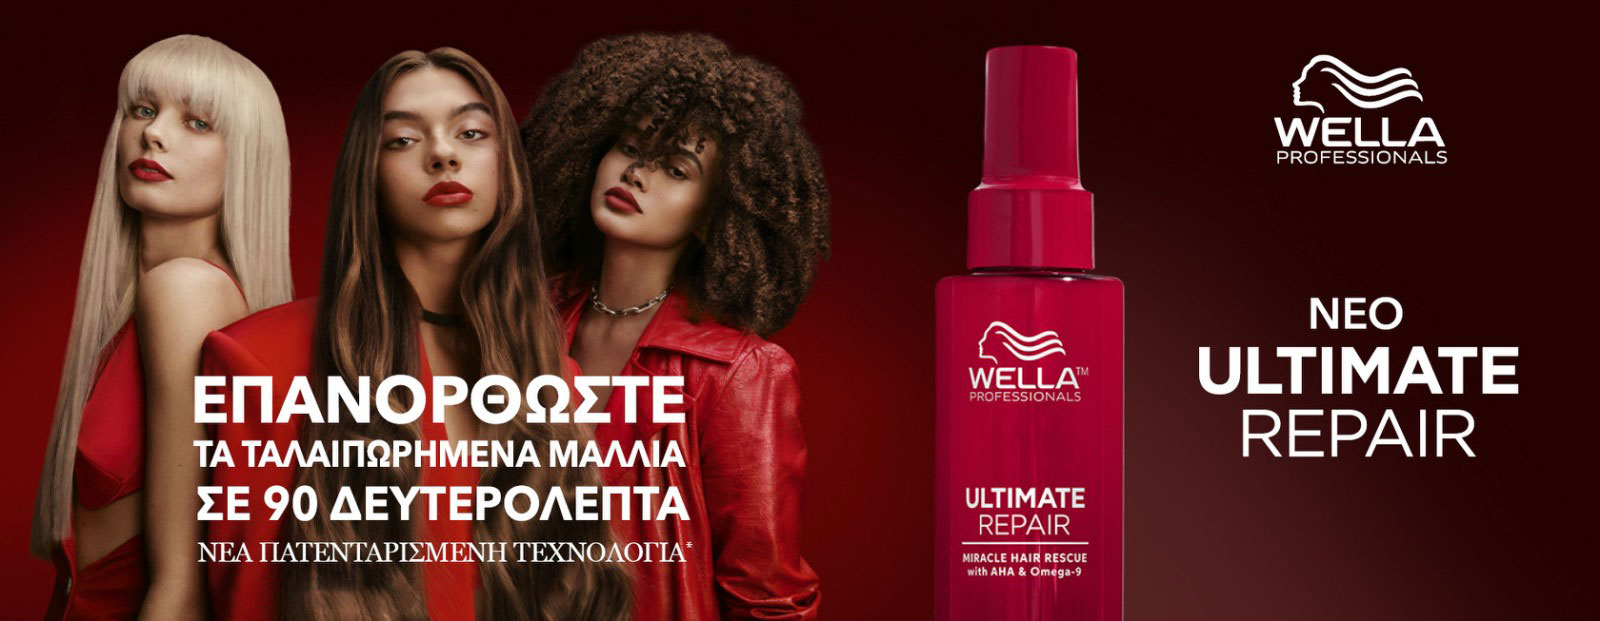 Το τελετουργικό της απόλυτης περιποίησης των μαλλιών σας με τη σειρά Wella Ultimate Repair